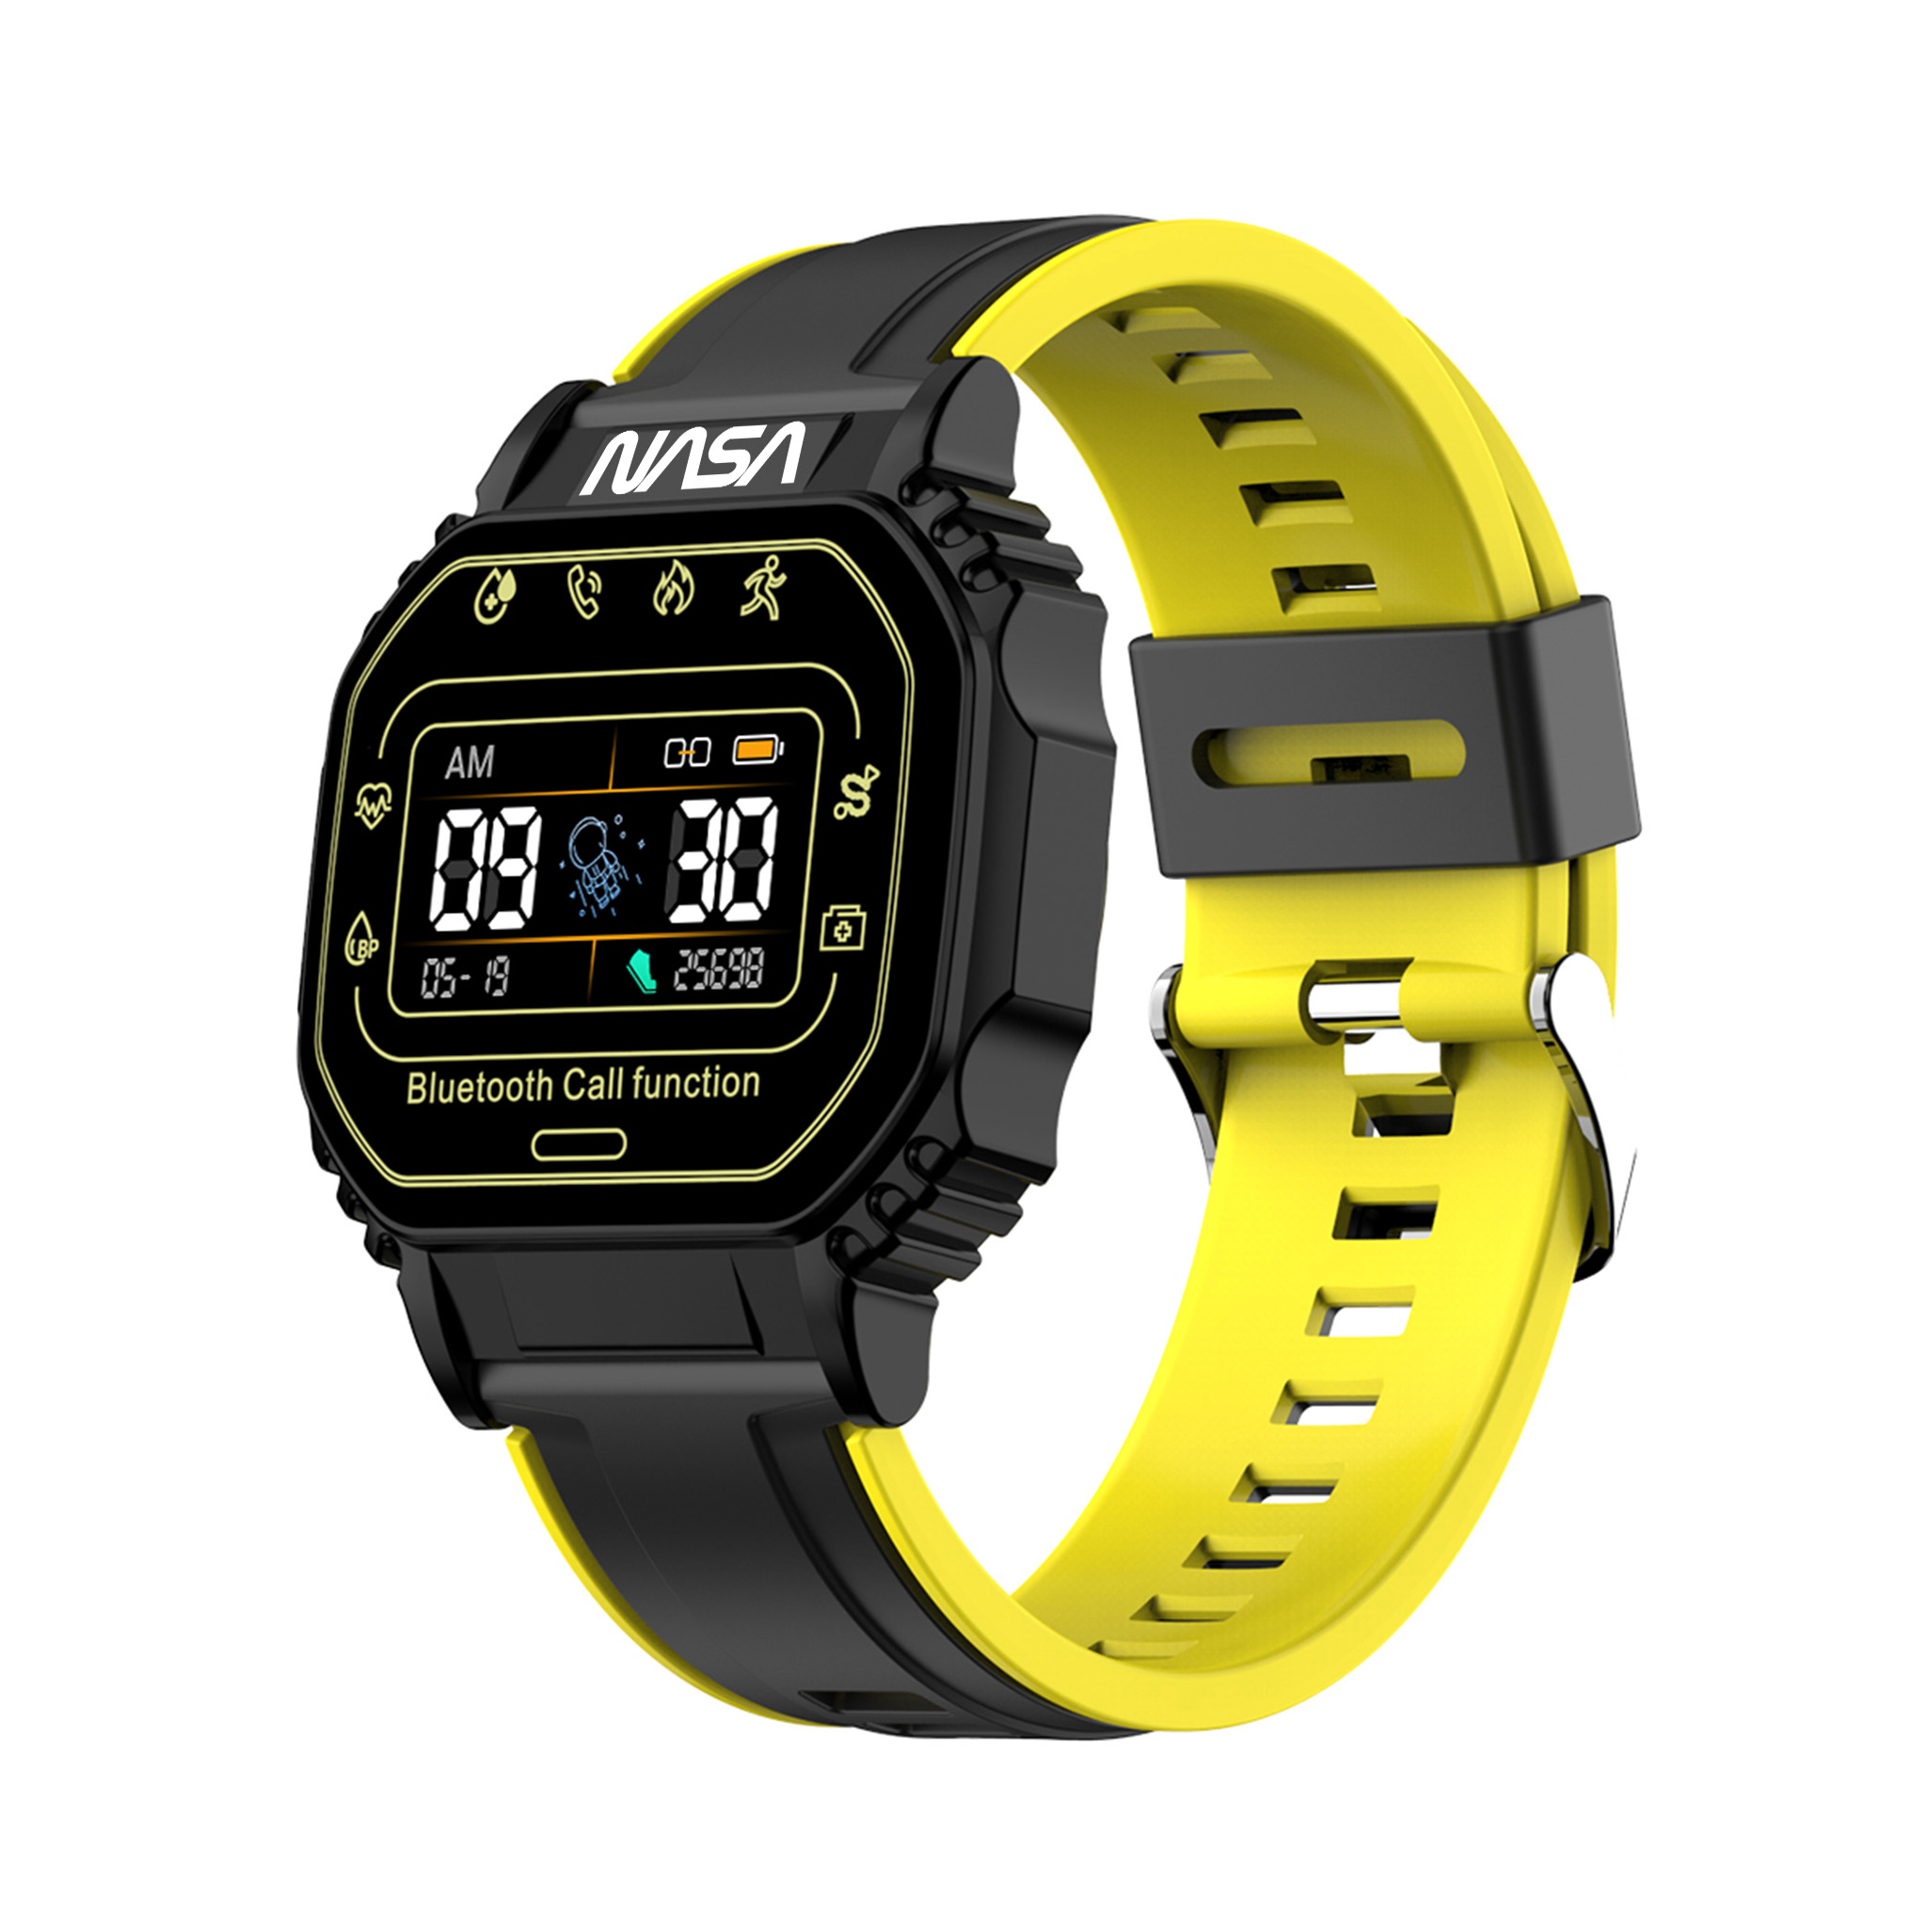 Nasa Smart Watch BNA30159-002 - svart/gul